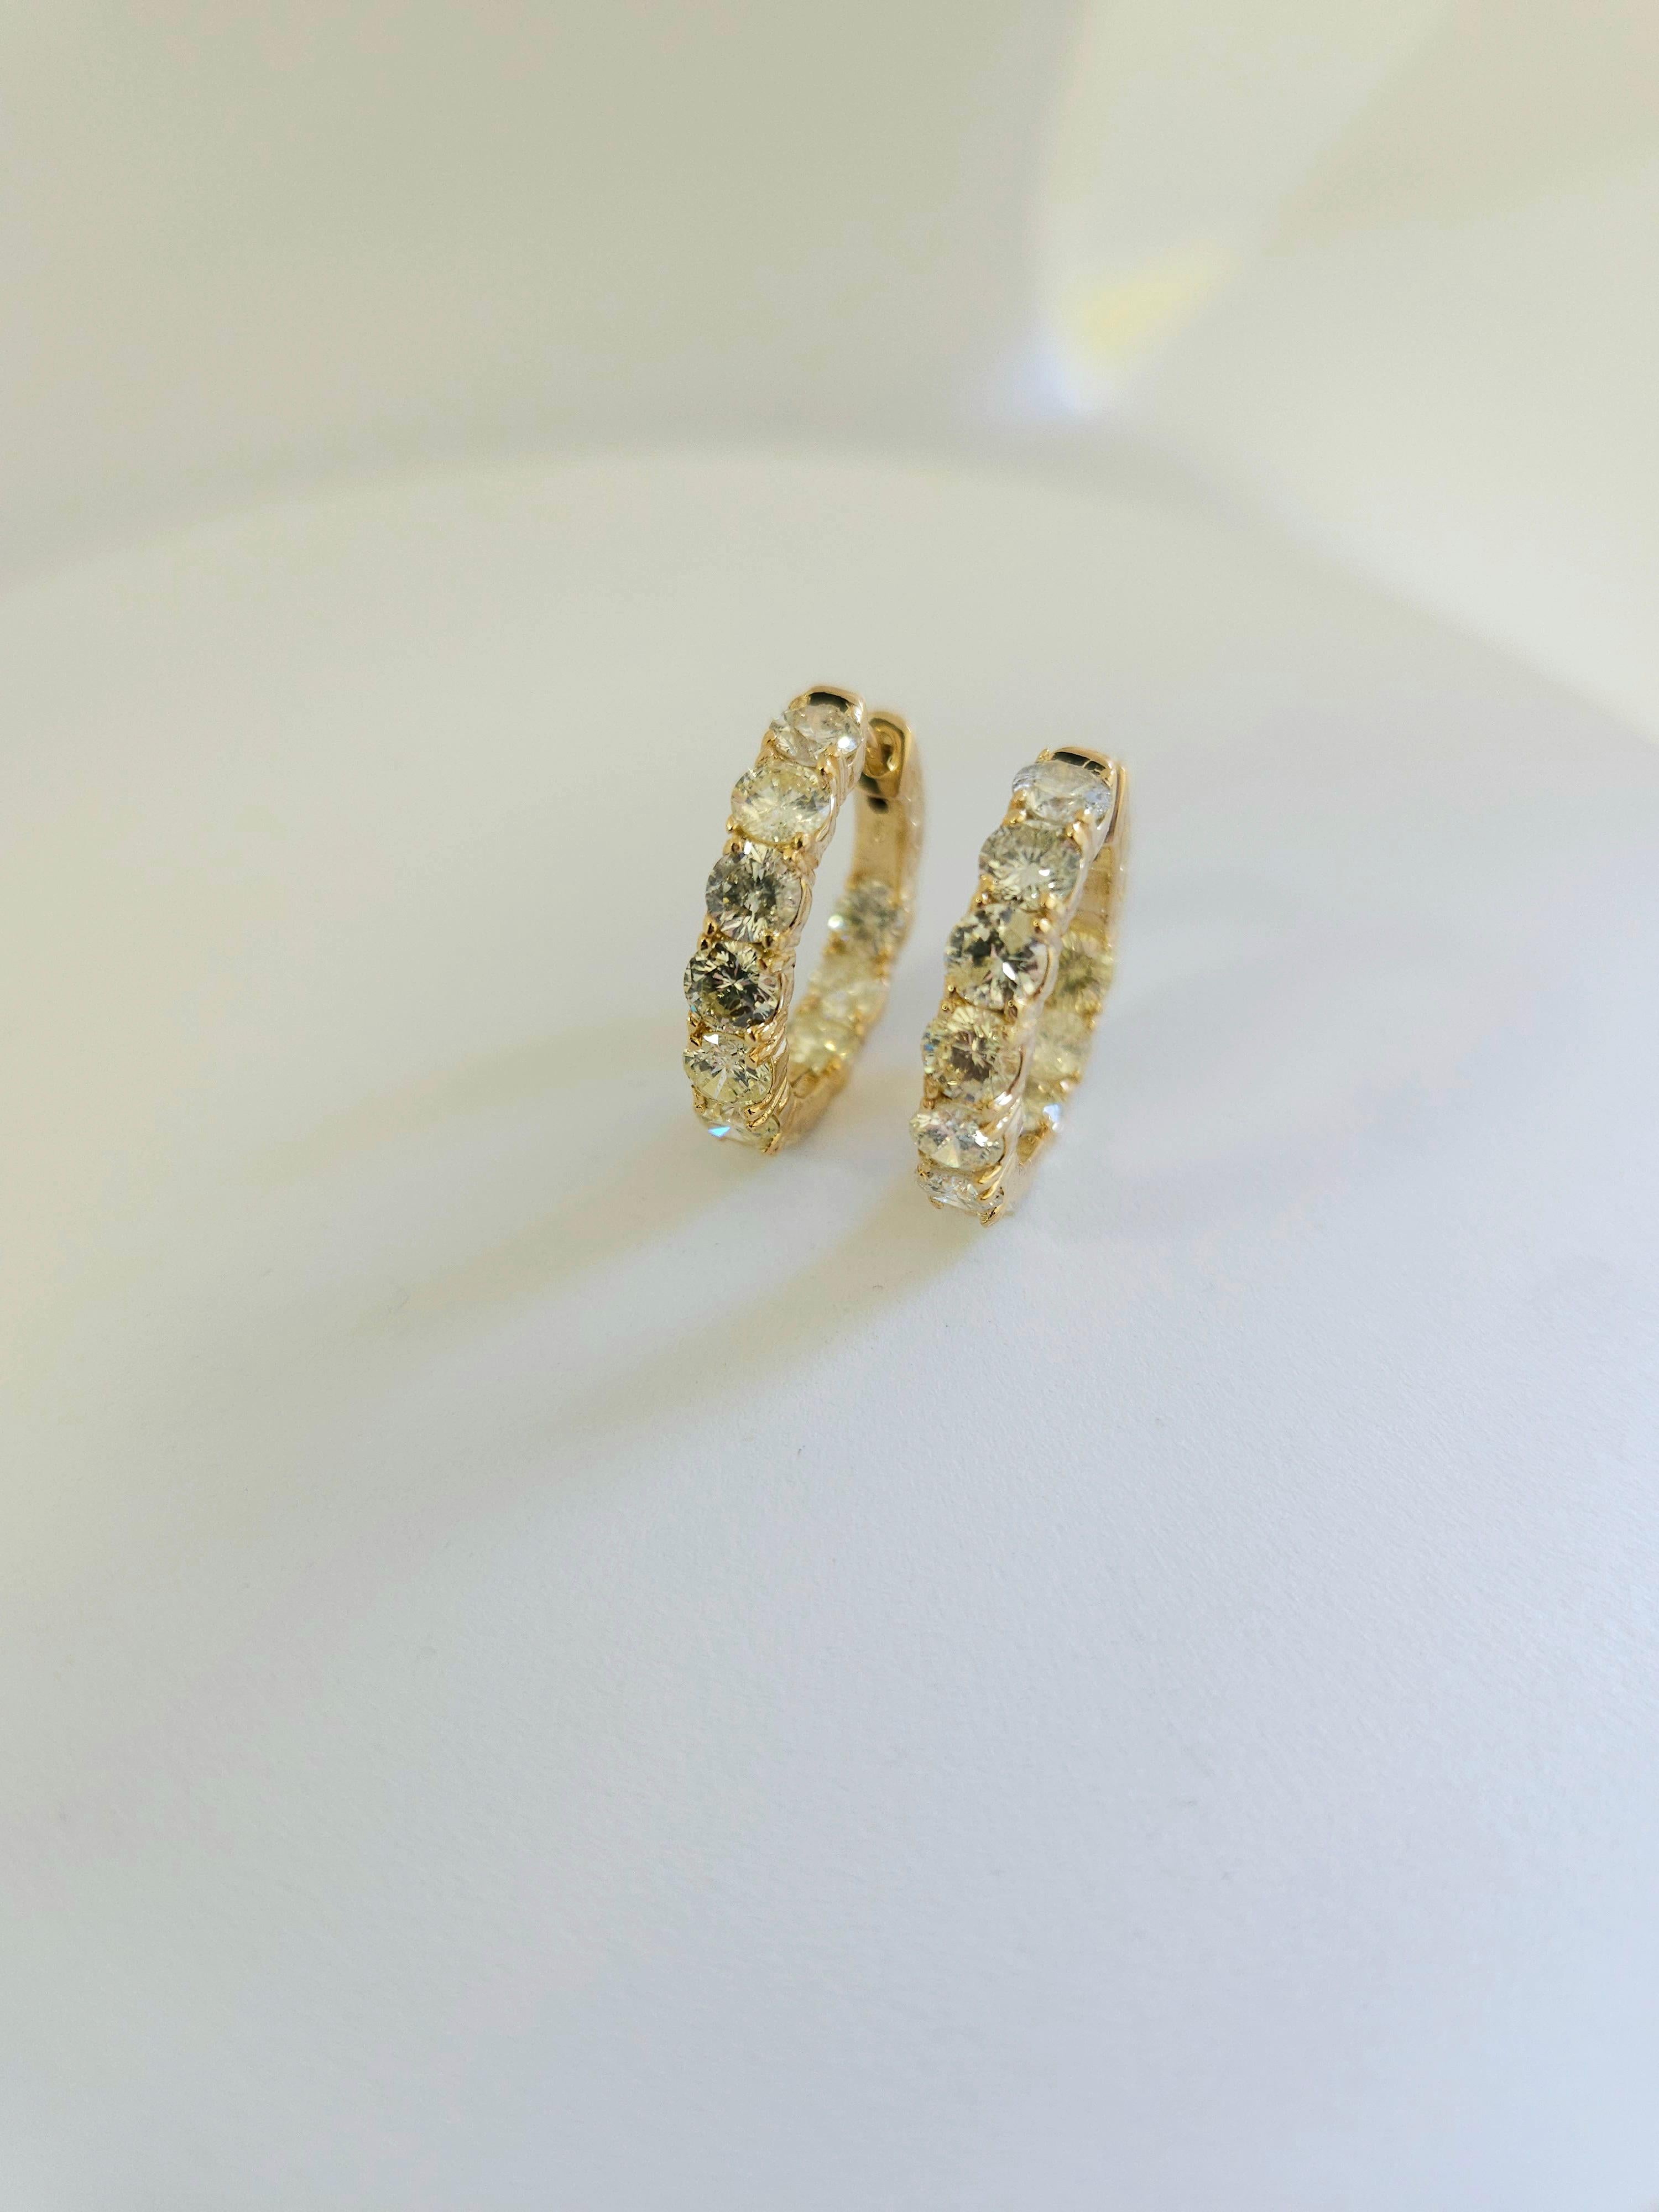 Wunderschönes Paar diamantener Huggie-Reifen-Ohrringe aus 14k Gelbgold. Wird mit einem Druckknopfverschluss gesichert und getragen. Eleganz für jeden Augenblick. Stil von innen nach außen
Durchschnittliche Farbe J, Reinheit SI,I 
Misst 0,75 Zoll